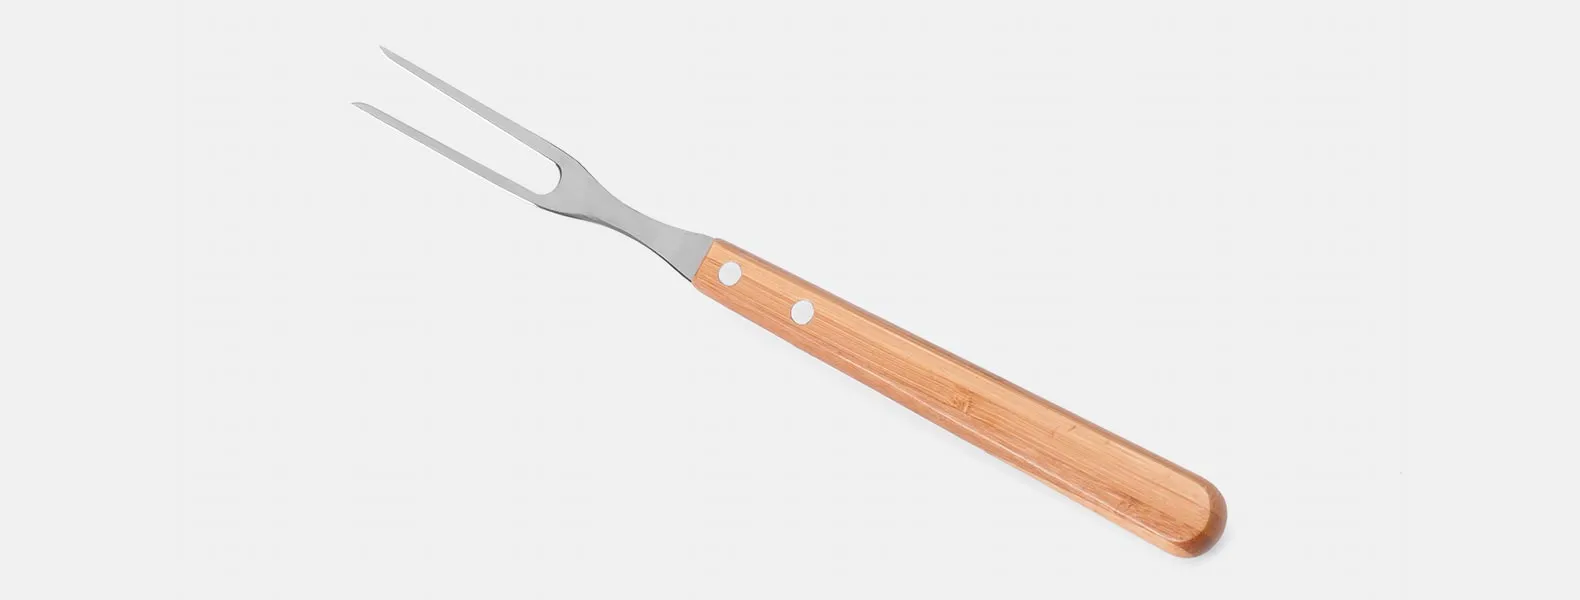 Kit composto por seis peças com cabos em bambu e lâminas em aço Inox com rebites resistentes, sendo uma faca 8”, um garfo trinchante, uma faca 5” para desossar, uma chaira 8”, uma faca Santoku 7” e uma faca 7” para pão. Estão organizados em fita elástica preta no interior de um estojo.